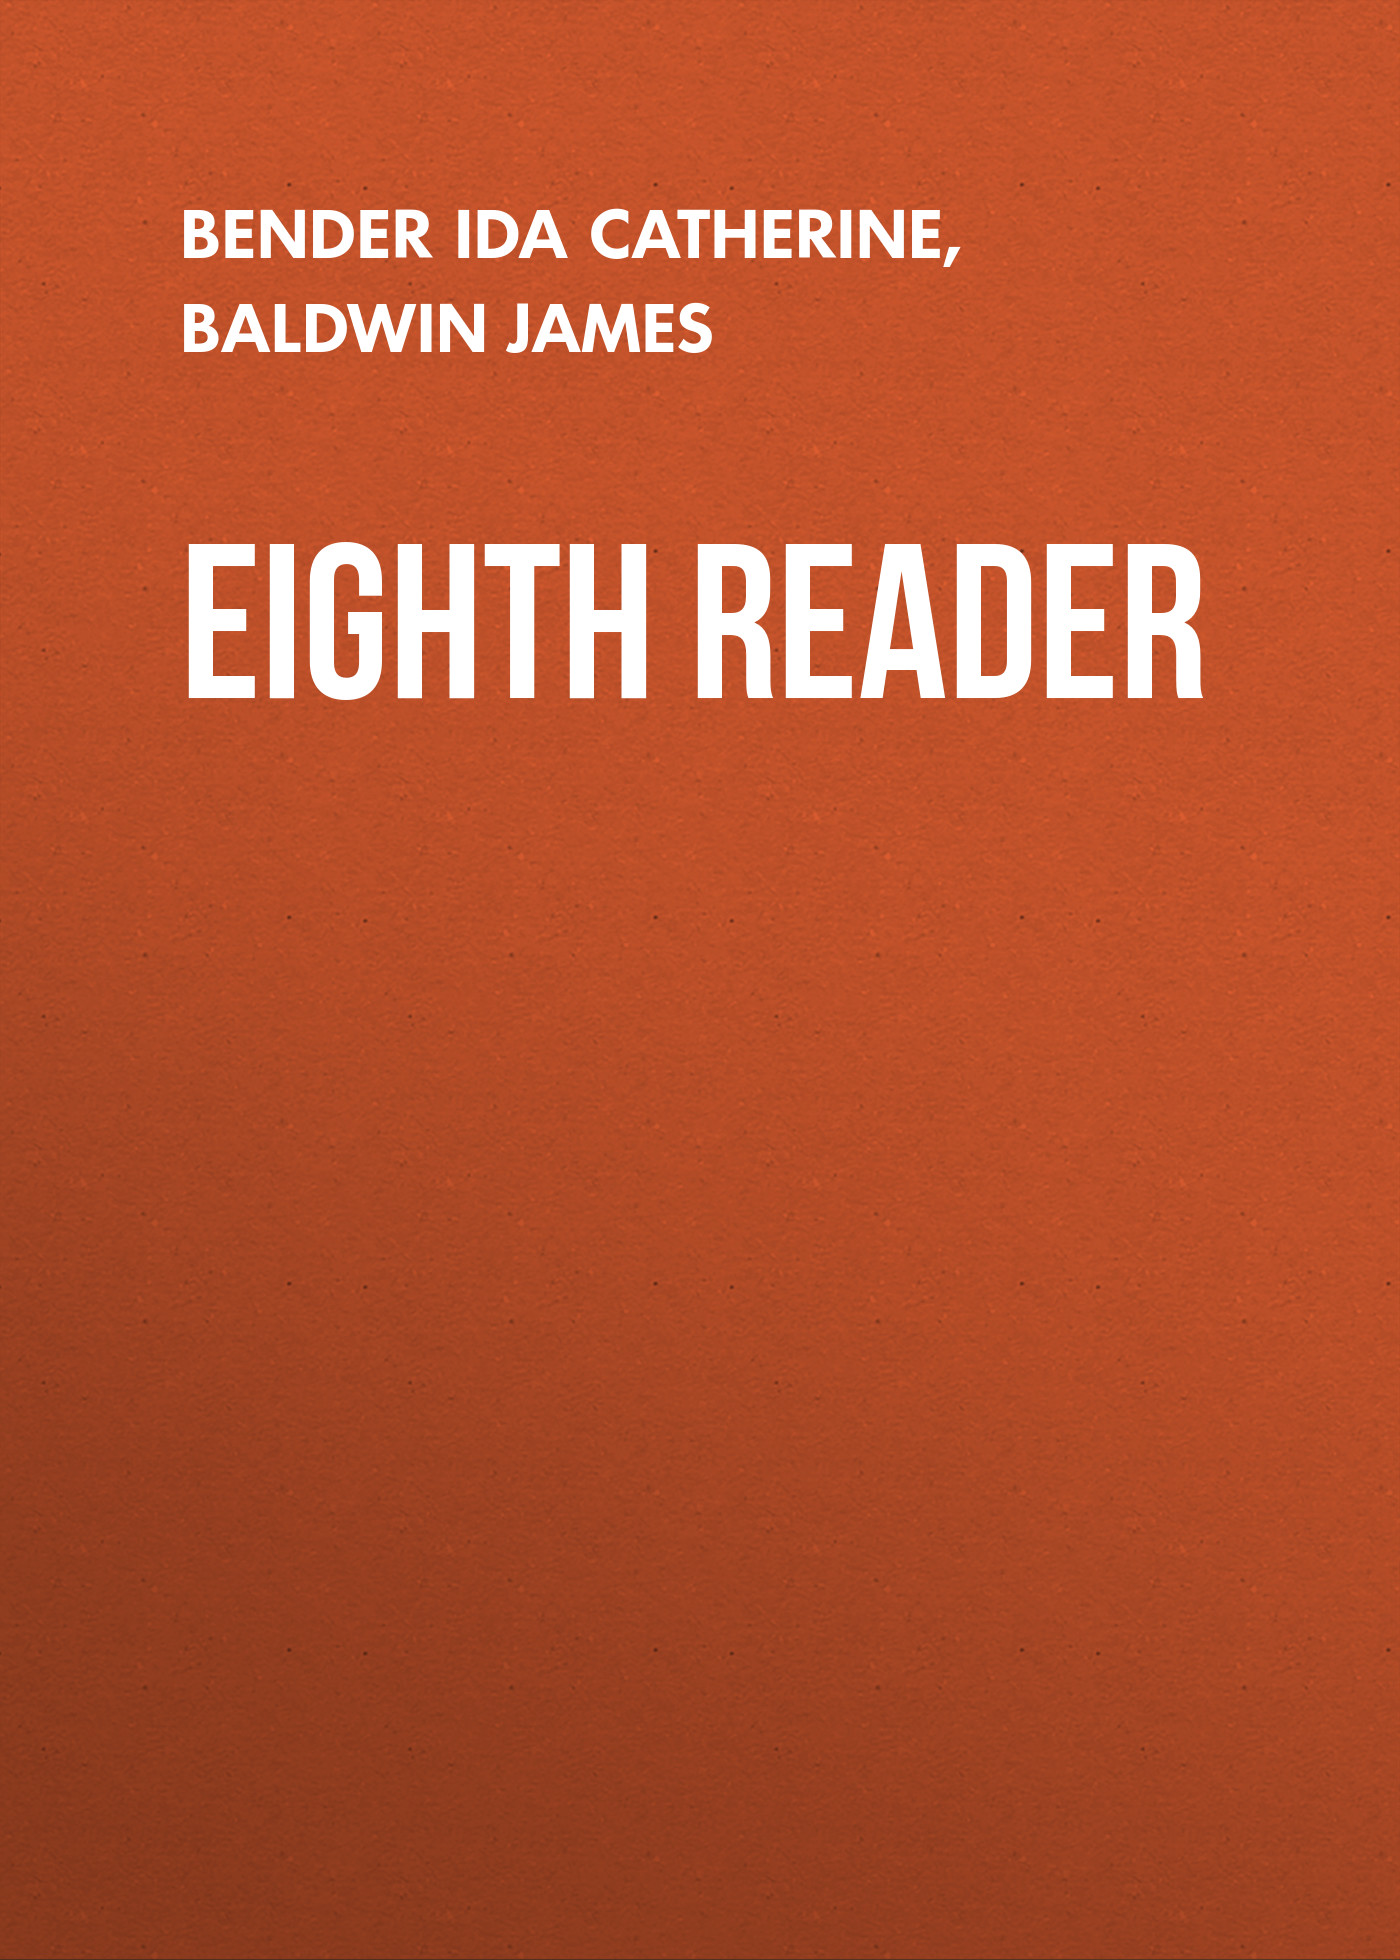 Книга Eighth Reader из серии , созданная Ida Bender, James Baldwin, может относится к жанру Зарубежная старинная литература, Зарубежная классика. Стоимость электронной книги Eighth Reader с идентификатором 24173484 составляет 0 руб.